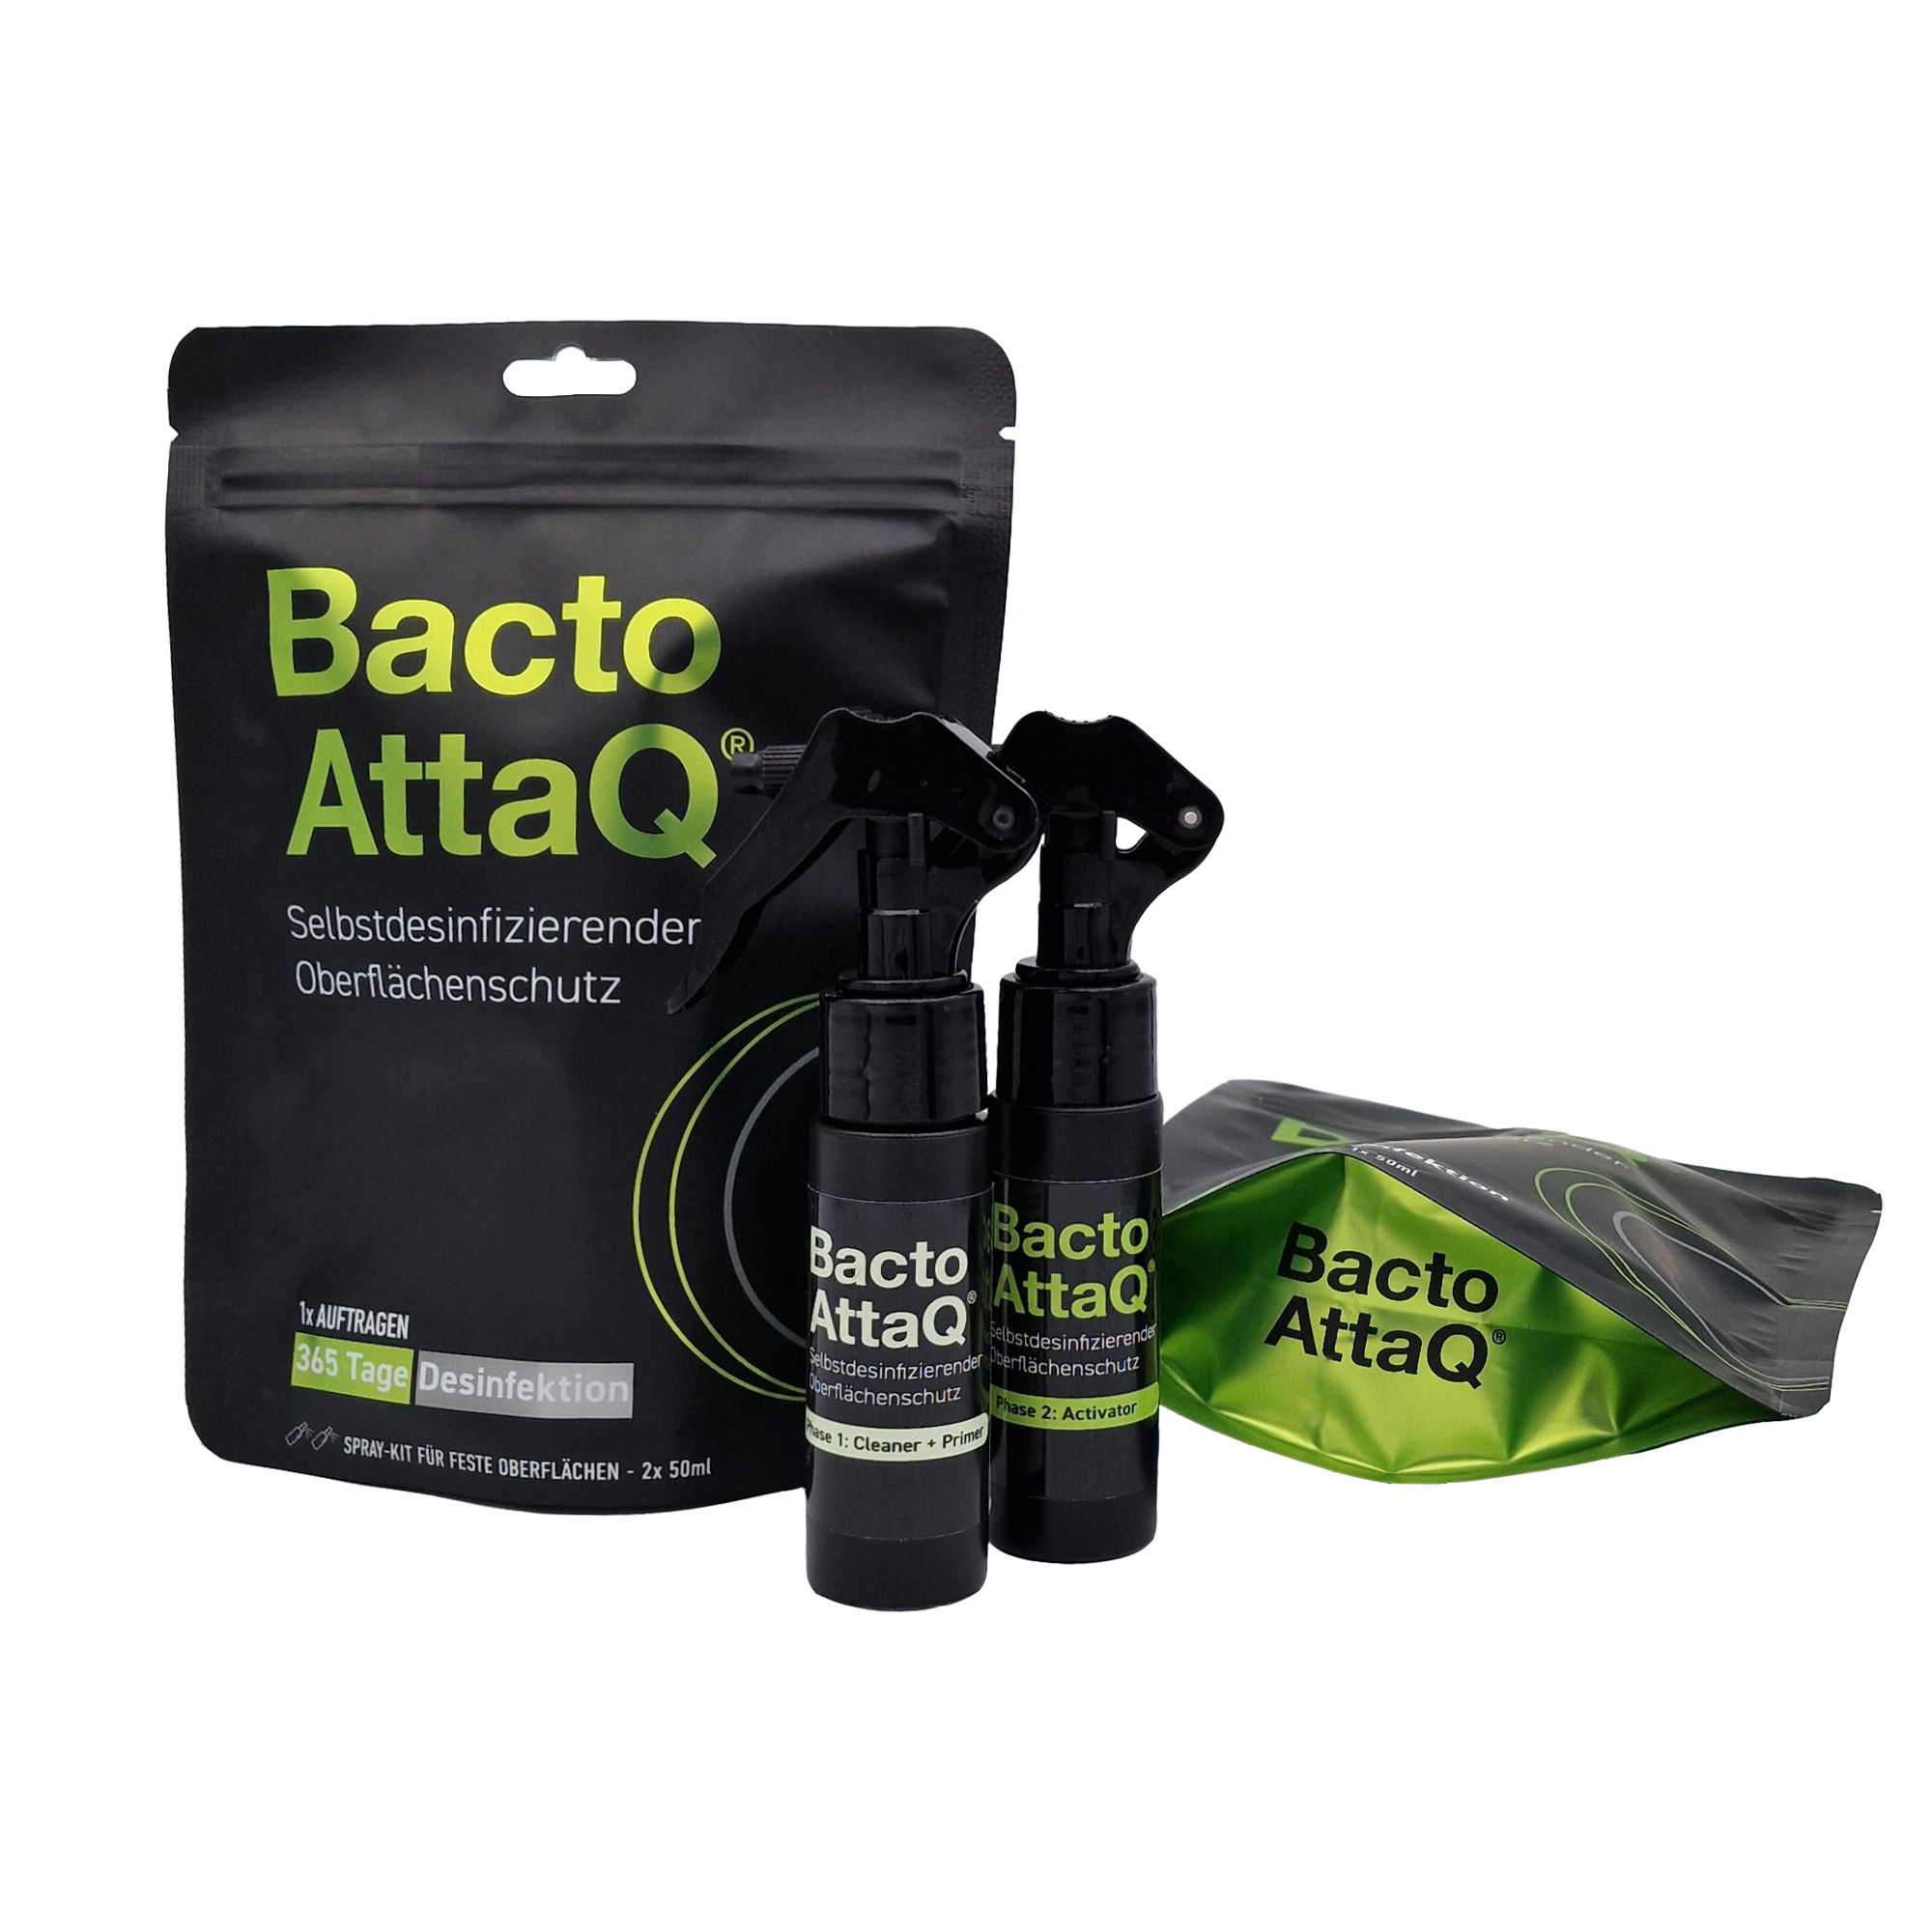 BactoAttaQ® Spray für feste Oberflächen 2x50 ml